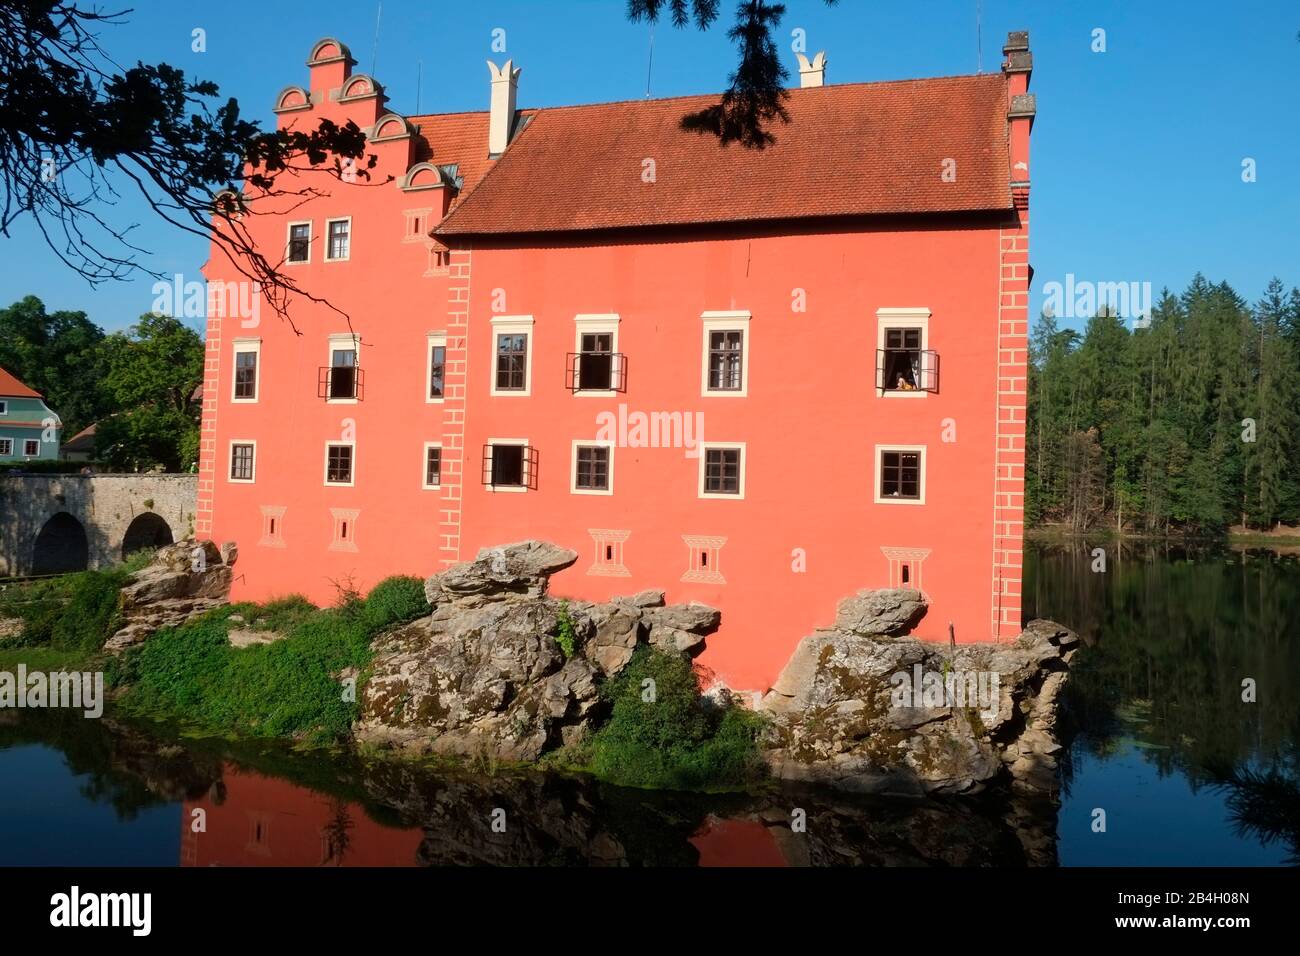 Cervena Lhota Chateau, Repubblica Ceca. La casa estiva ricostruita dal forte gotico nel 16th secolo è stato un luogo di divertimento, celebrazioni e tempo libero. Foto Stock